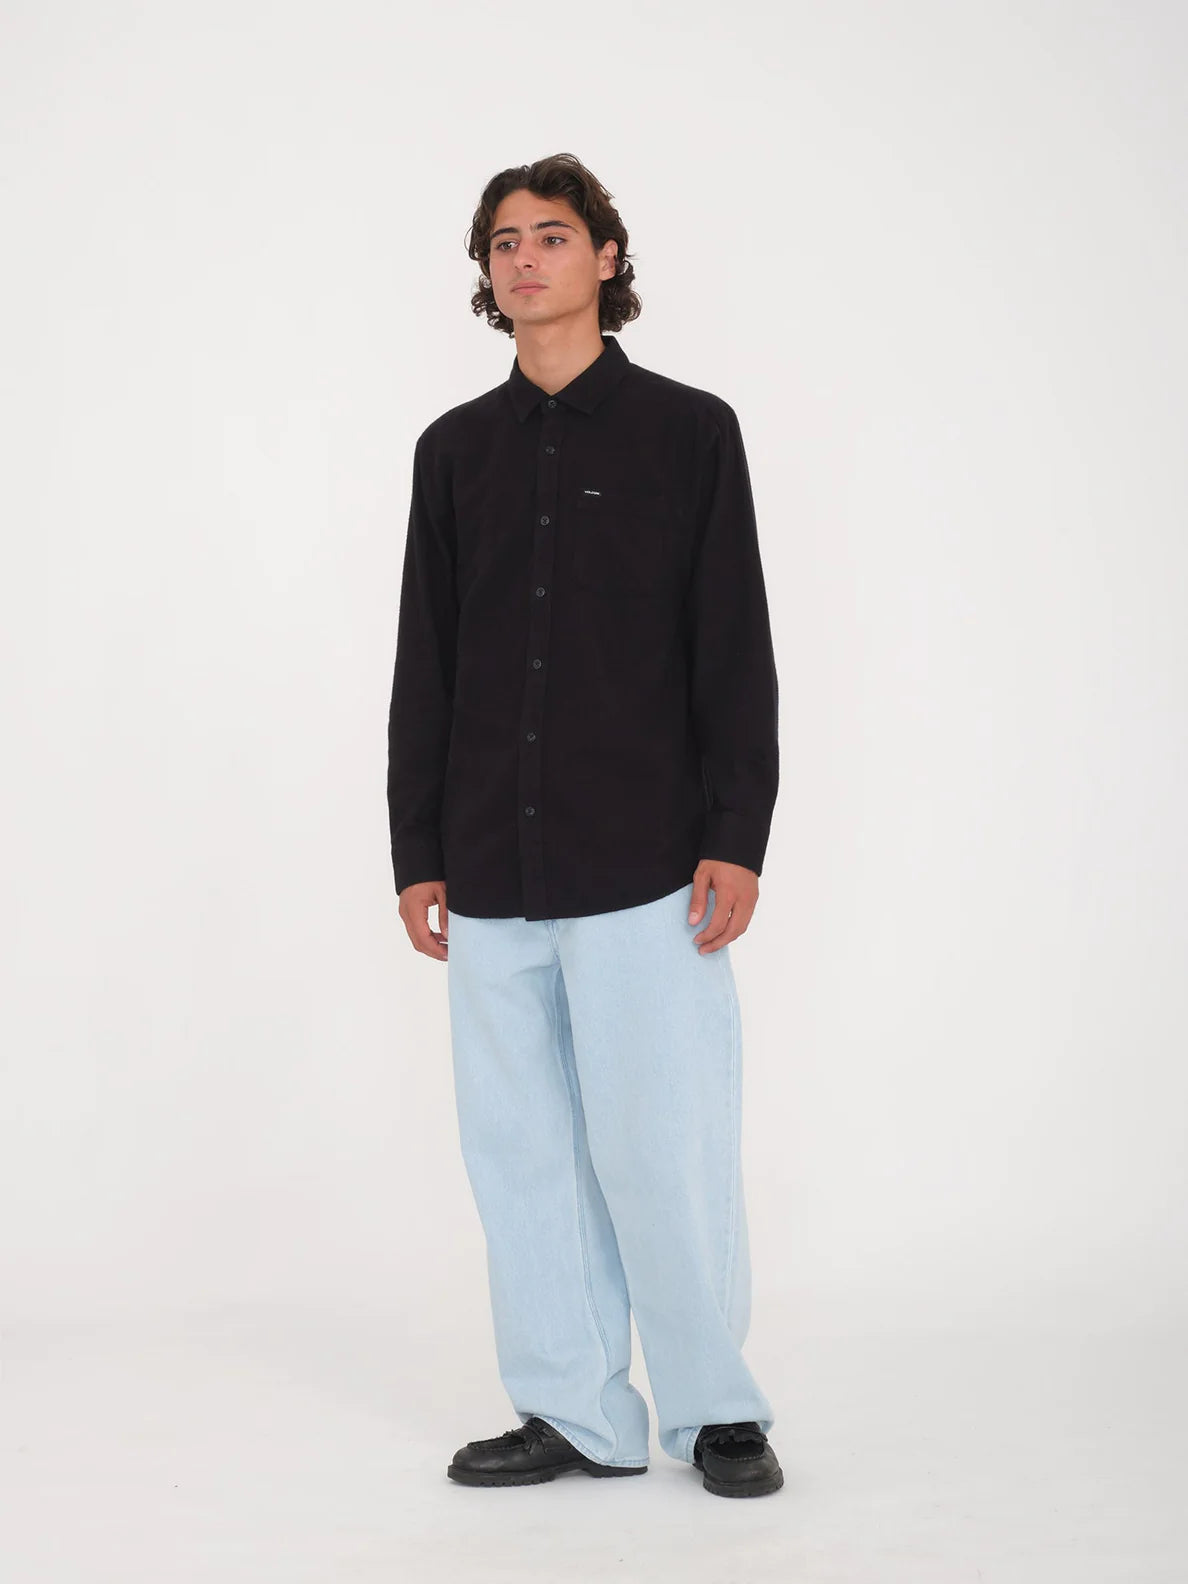 Camisa Manga larga Volcom Caden Solid - Black | Camisas de hombre | Camisas de manga larga | CAMISAS QUE NOS GUSTAN | Volcom Shop | surfdevils.com